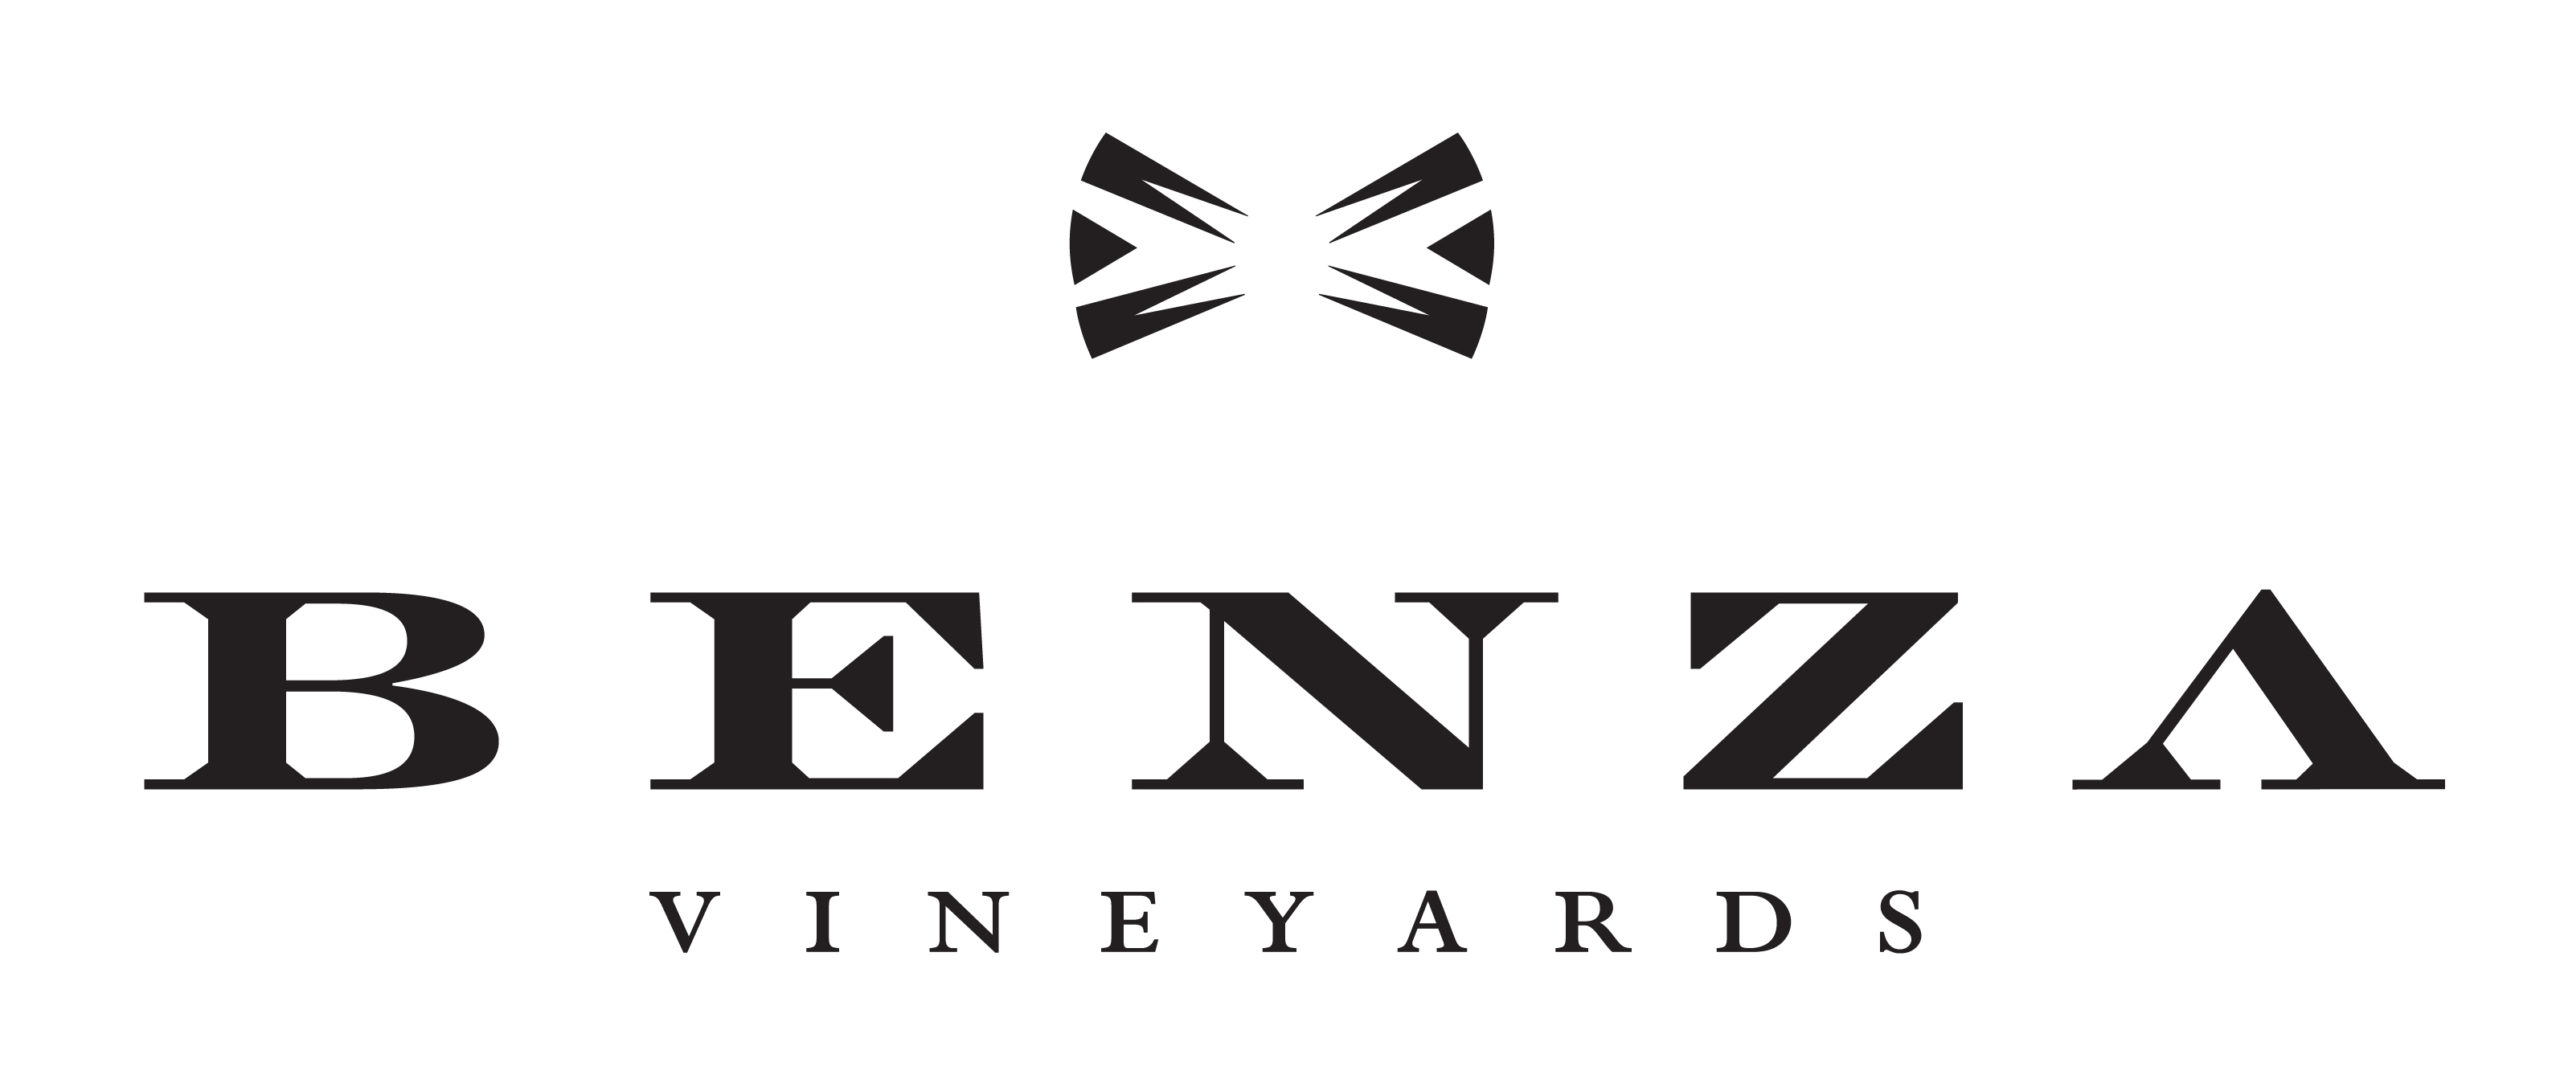 Benza Vineyards